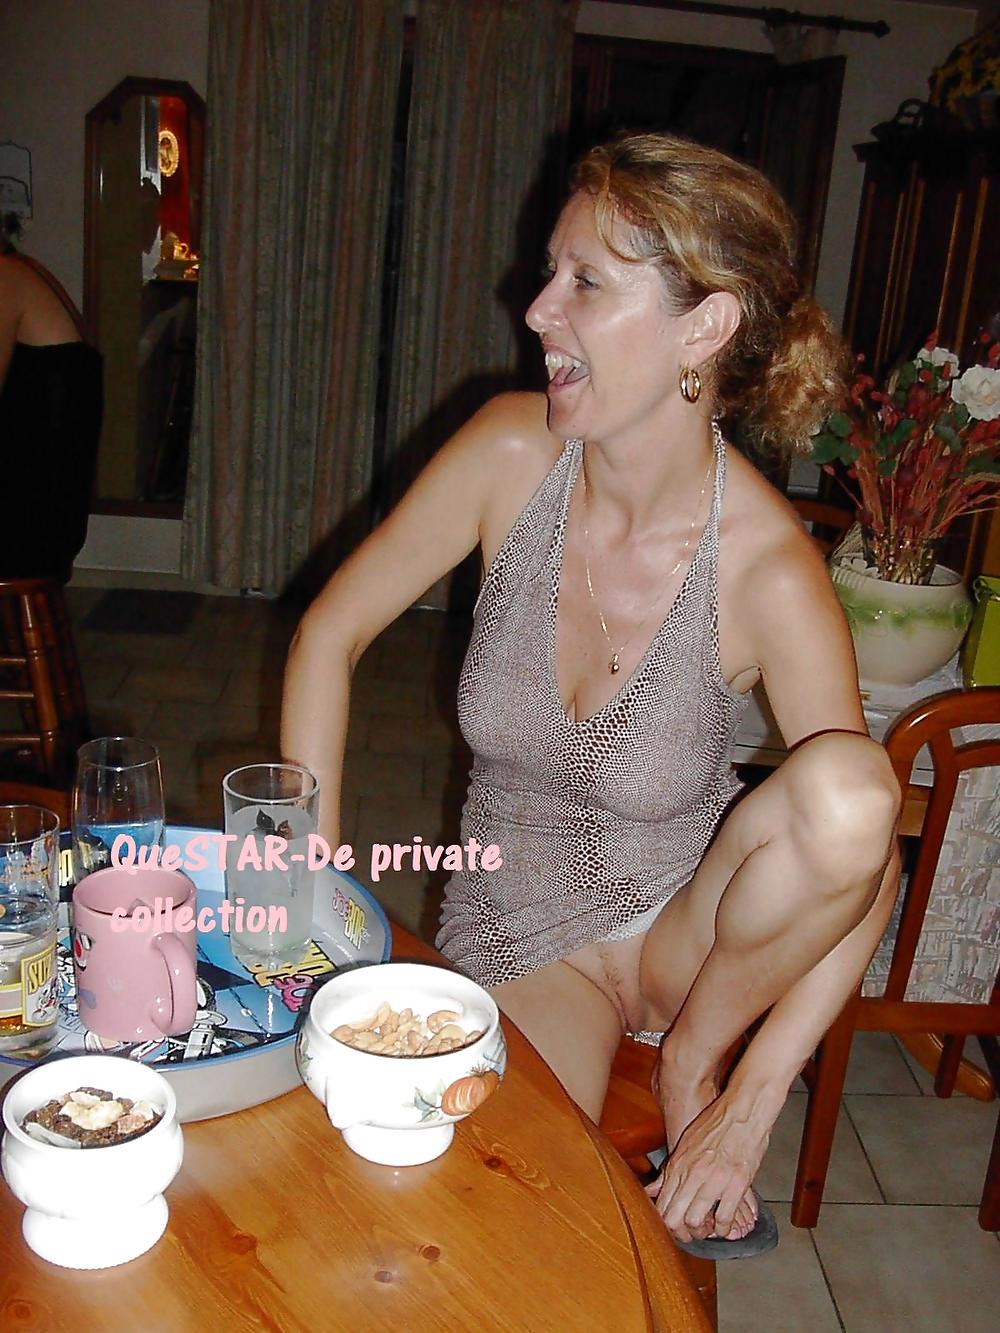 Reale Private Reife Frau Fotos 4 Von Questar De Porno Bilder Sex